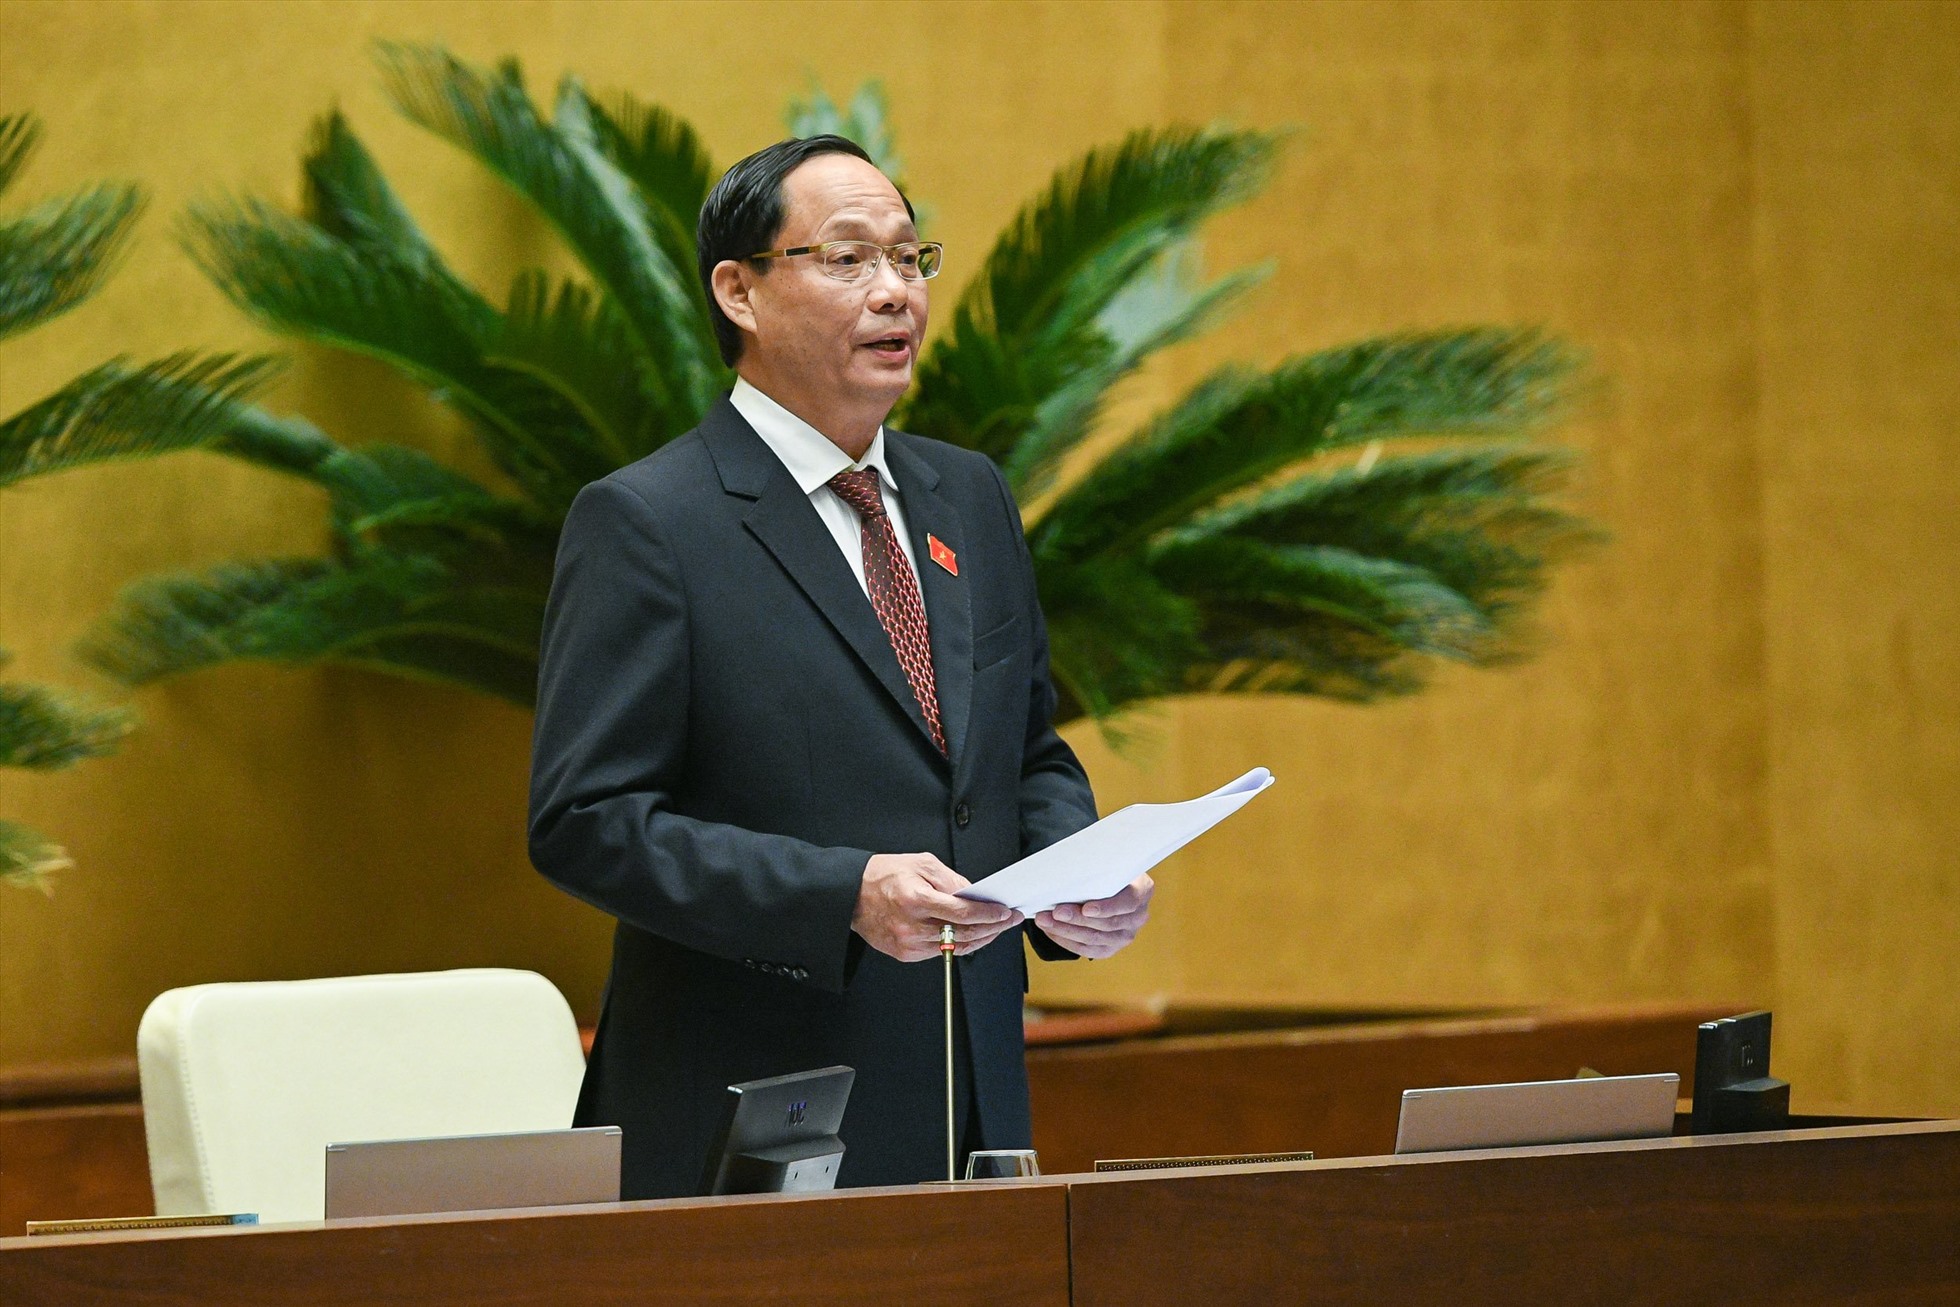 Phó Chủ tịch Quốc hội Trần Quang Phương kết luận nhóm vấn đề chất vấn thứ 4- Thanh tra